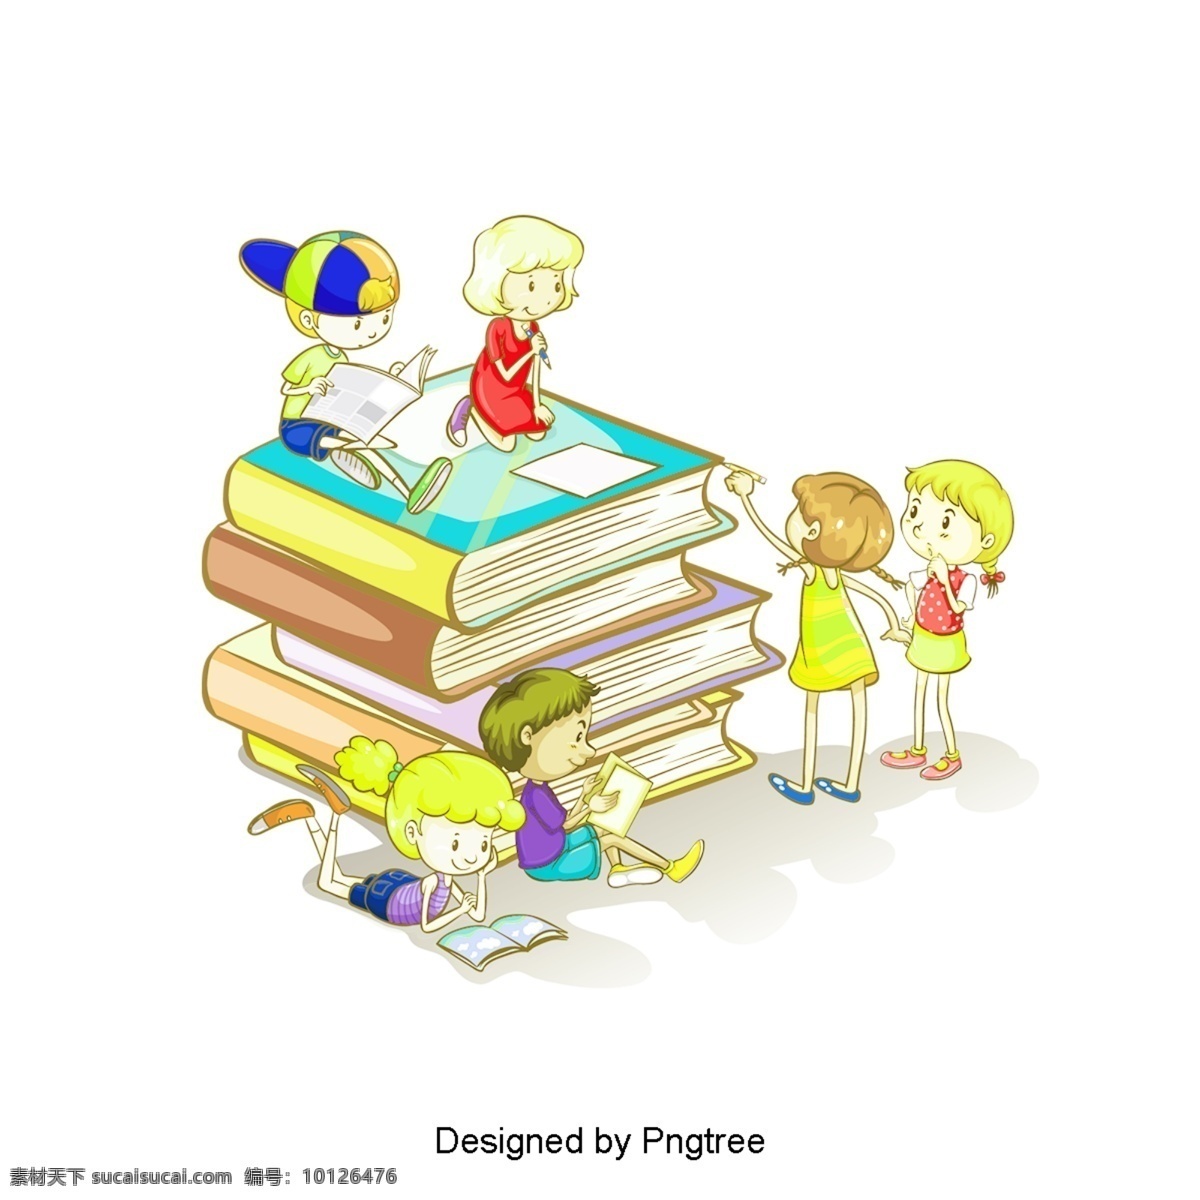 卡通 手绘 学校 书籍 文具 可爱 学生 铅笔 书 颜色 简单 学习 课堂